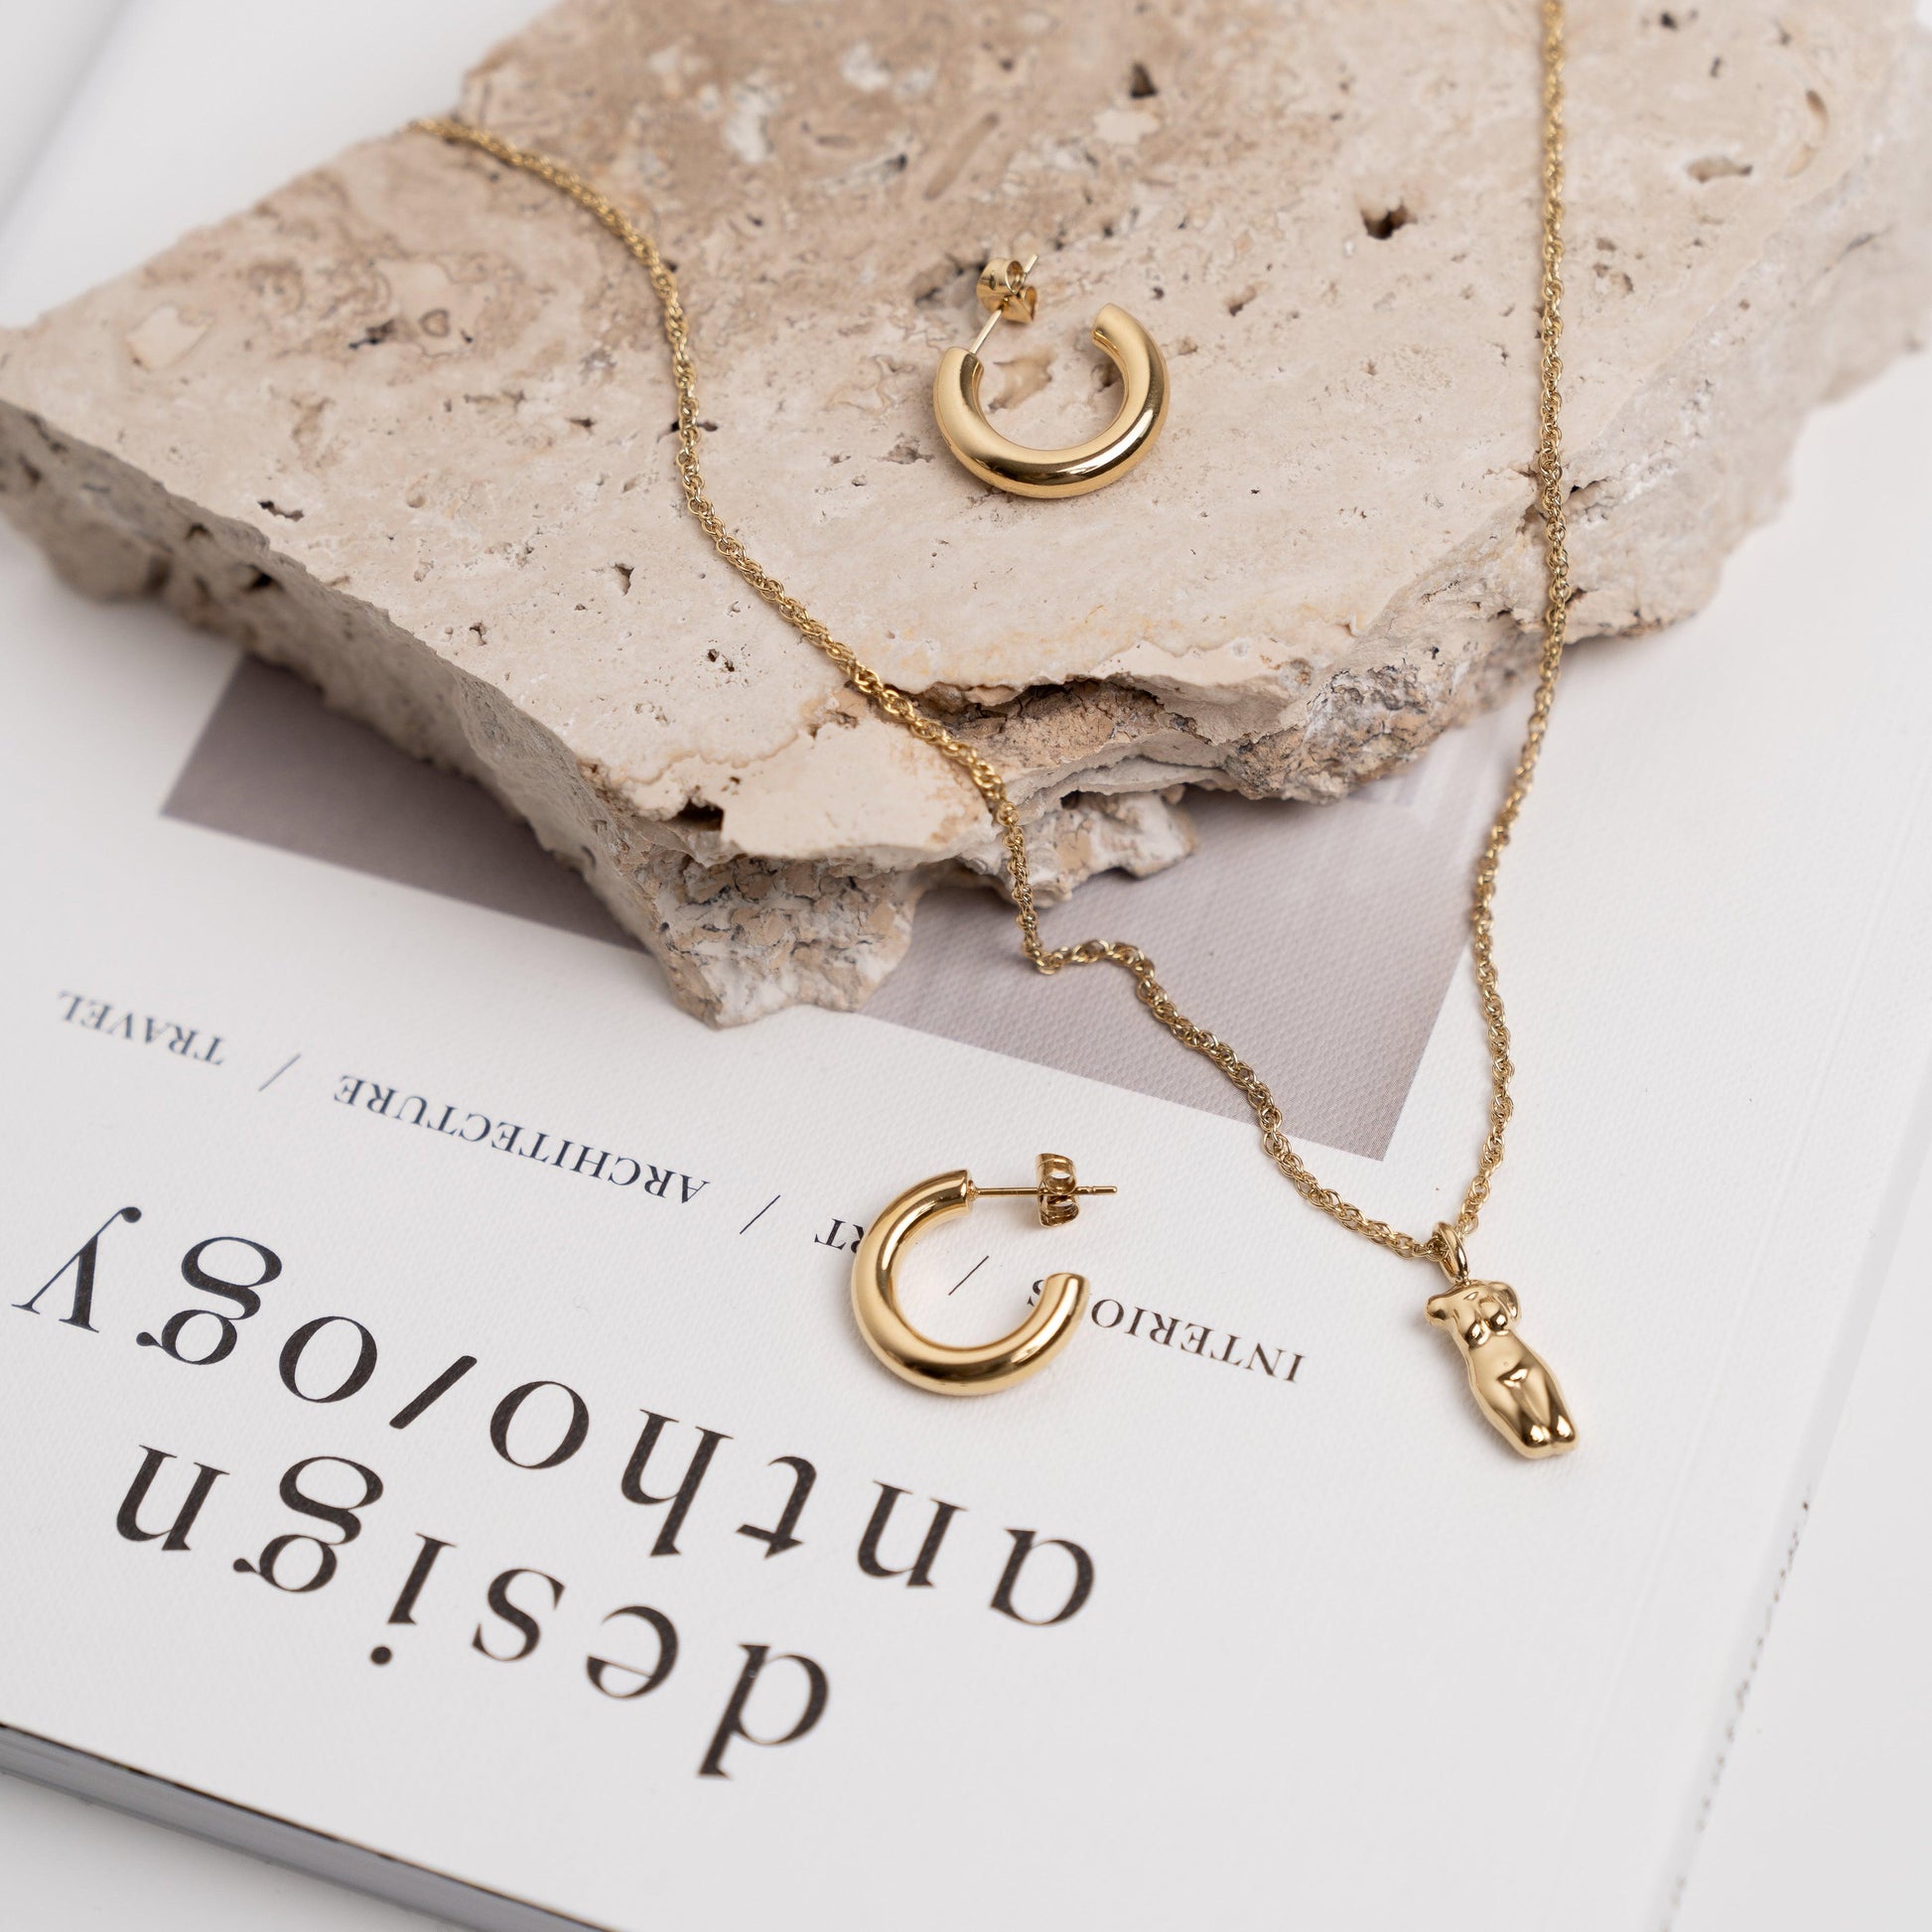 Venus Pendant Necklace | La Musa Jewellery